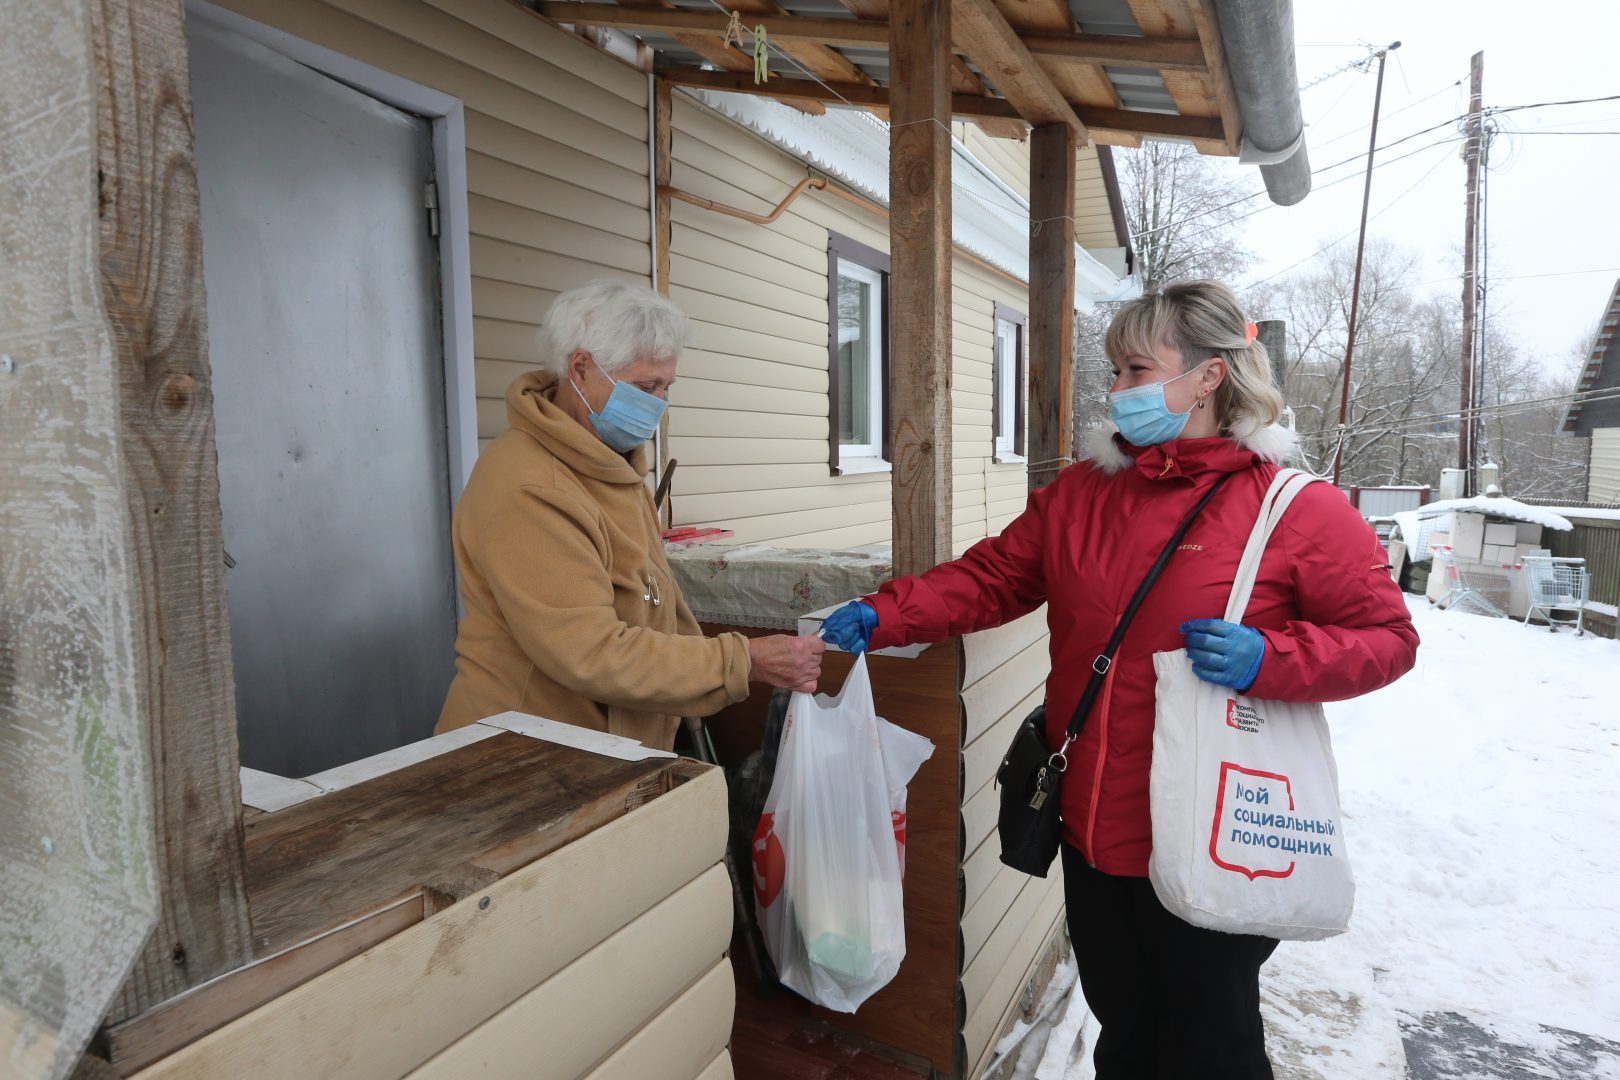 Волонтеры развезли более 1200 упаковок лекарств москвичам на самоизоляции